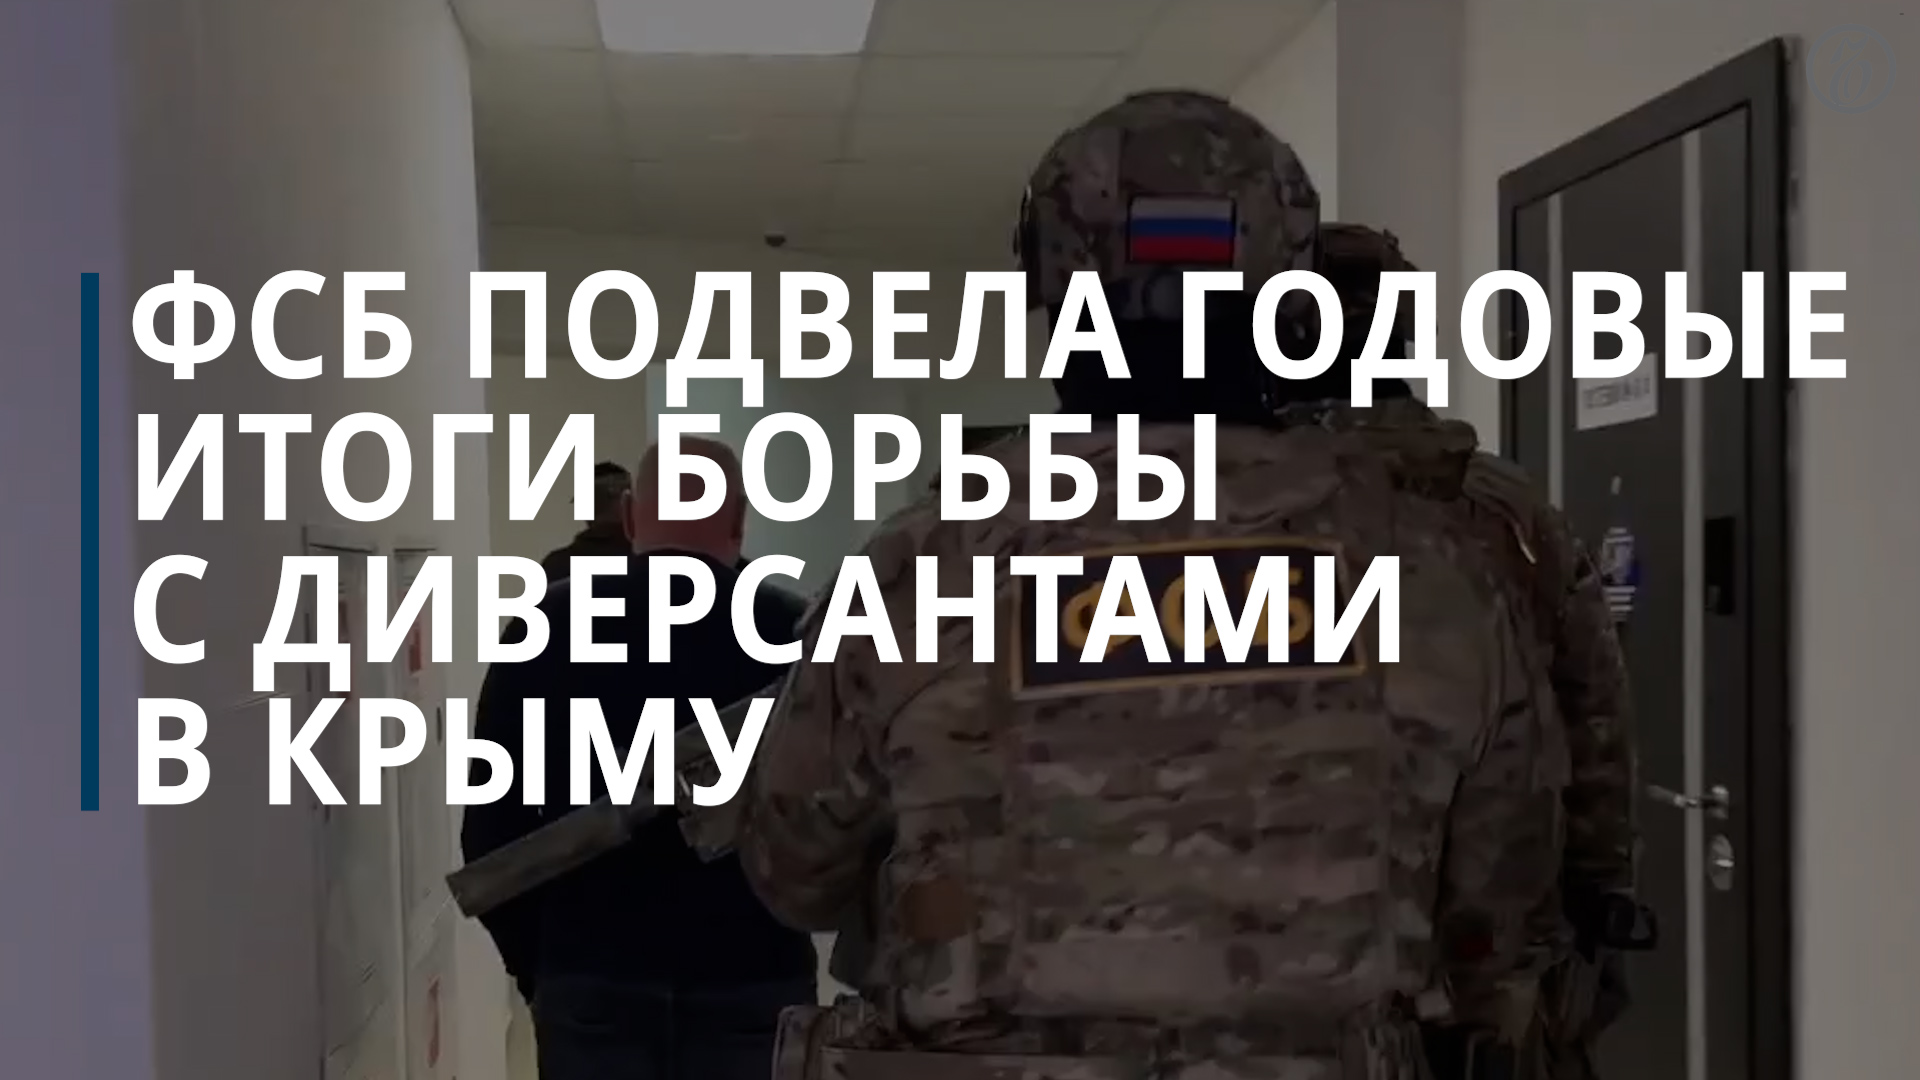 ФСБ представила годовые итоги борьбы с диверсантами в Крыму — Коммерсантъ